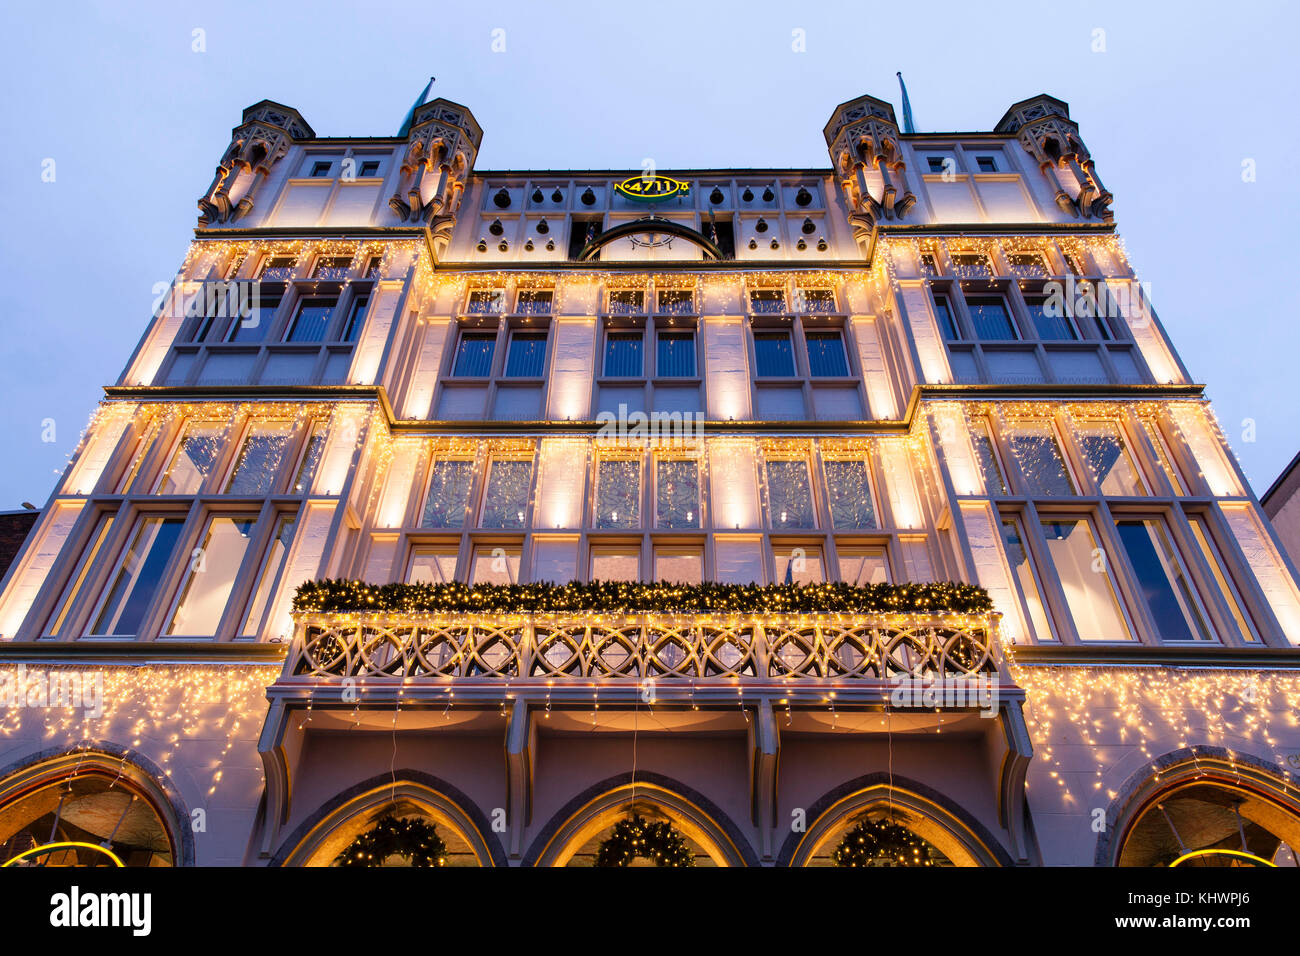 Germania, Colonia, la casa del 4711 a Glockengasse, casa ancestrale della fabbrica di profumi Muelhens, illuminazione durante il periodo natalizio. Germania Foto Stock